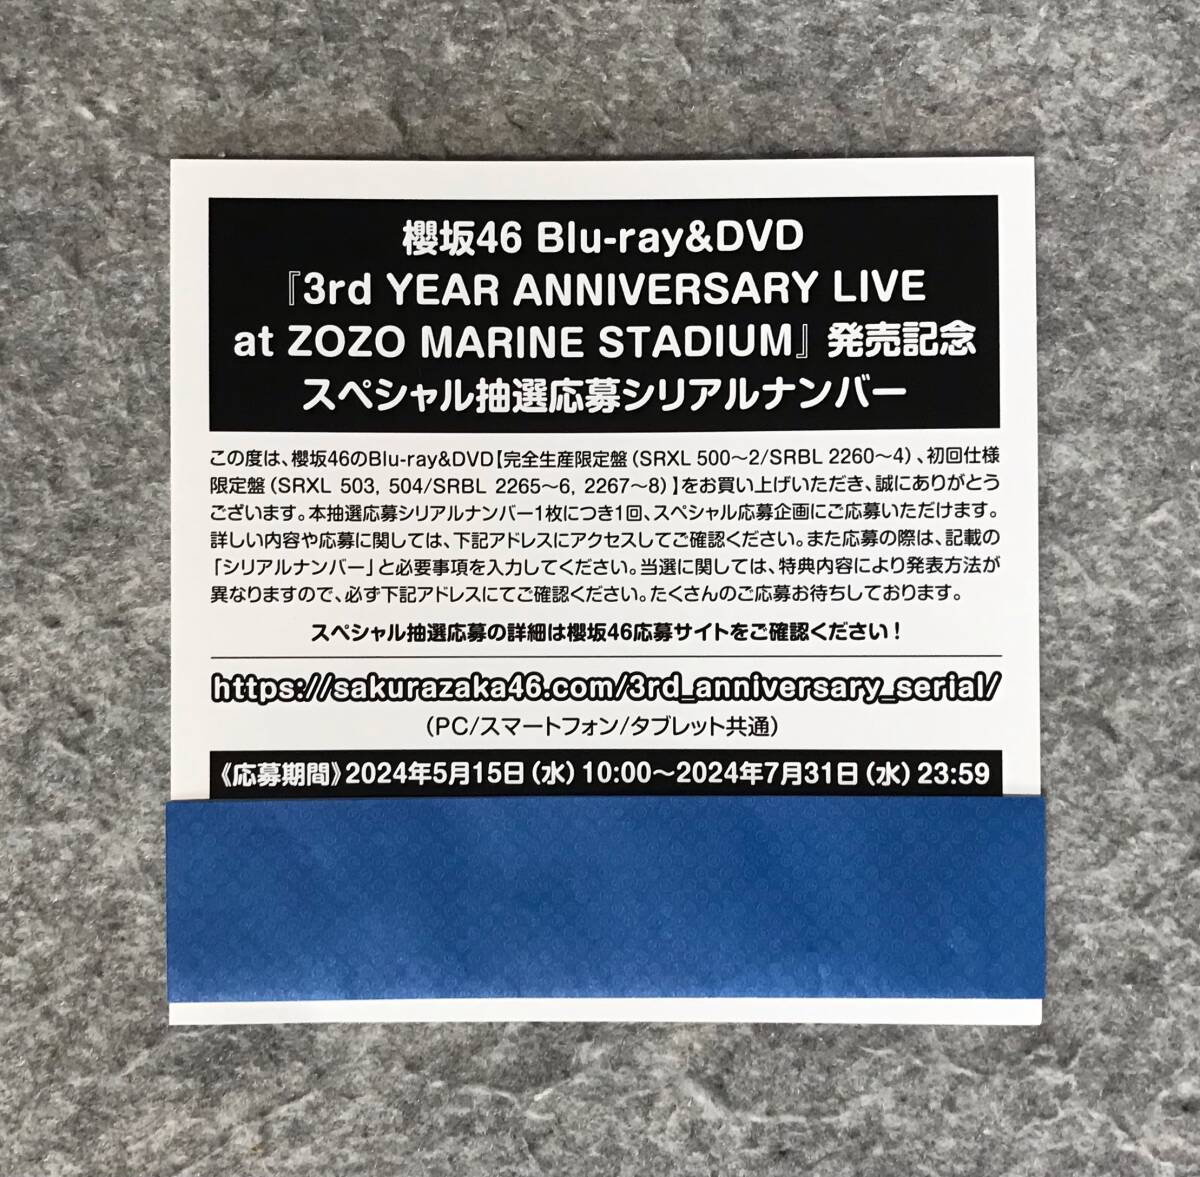 【応募券のみ】 櫻坂46 3rd YEAR ANNIVERSARY LIVE at ZOZO MARINE STADIUM DVD / Blu-ray 封入特典 スペシャル抽選応募シリアルナンバー _付箋は出品物ではありません